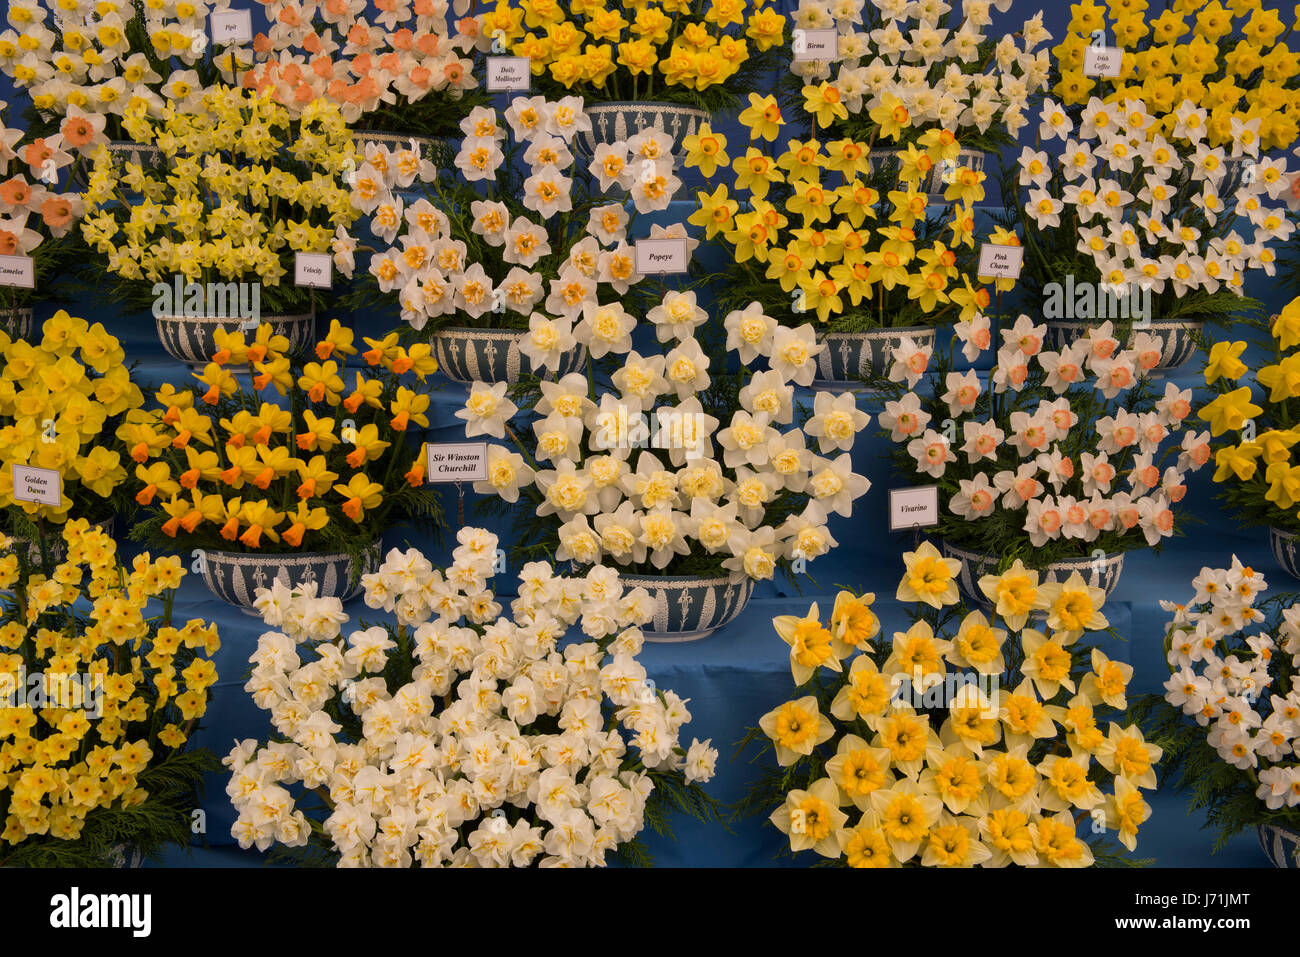 Londres, Royaume-Uni. 22 mai, 2017. Un écran de jonquilles par marcheurs bulbes dans le chapiteau au RHS Chelsea Flower Show 2017, London, UK Crédit : Ellen Rooney/Alamy Live News Banque D'Images